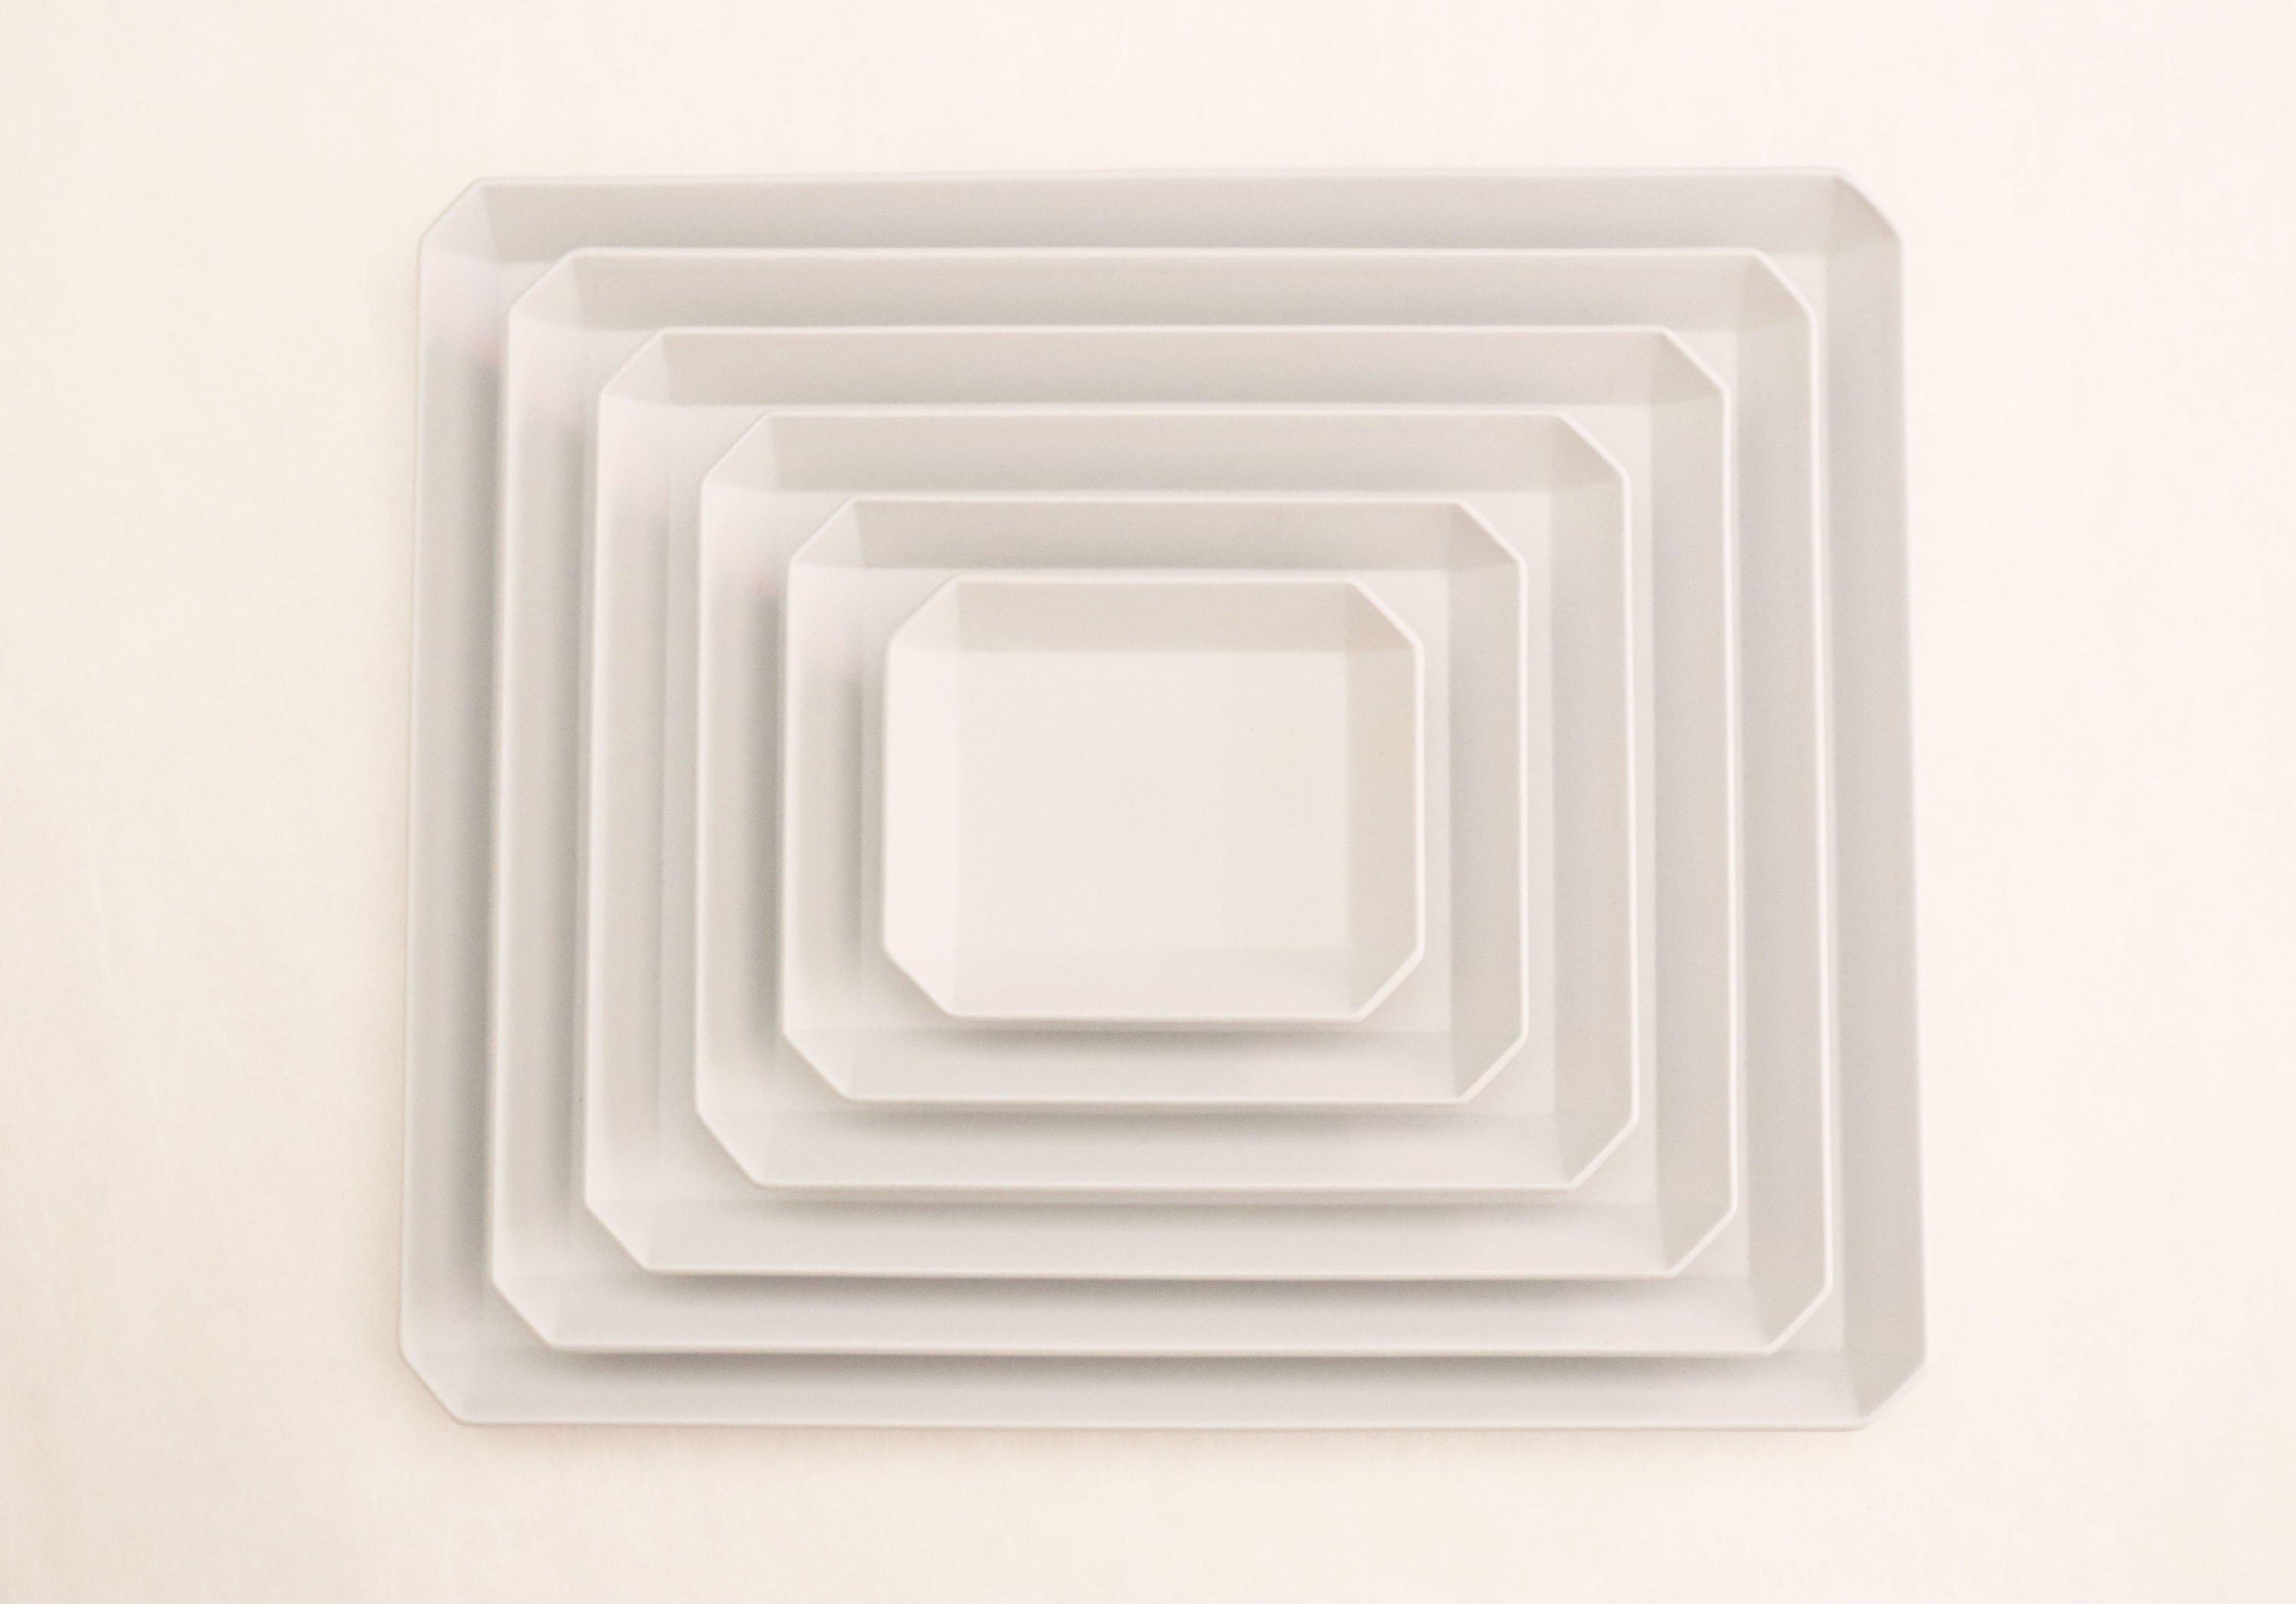 TY"Standard" Square Plate plain Gray 200-1616 / arita japan-YUGEN ONLINE STORE